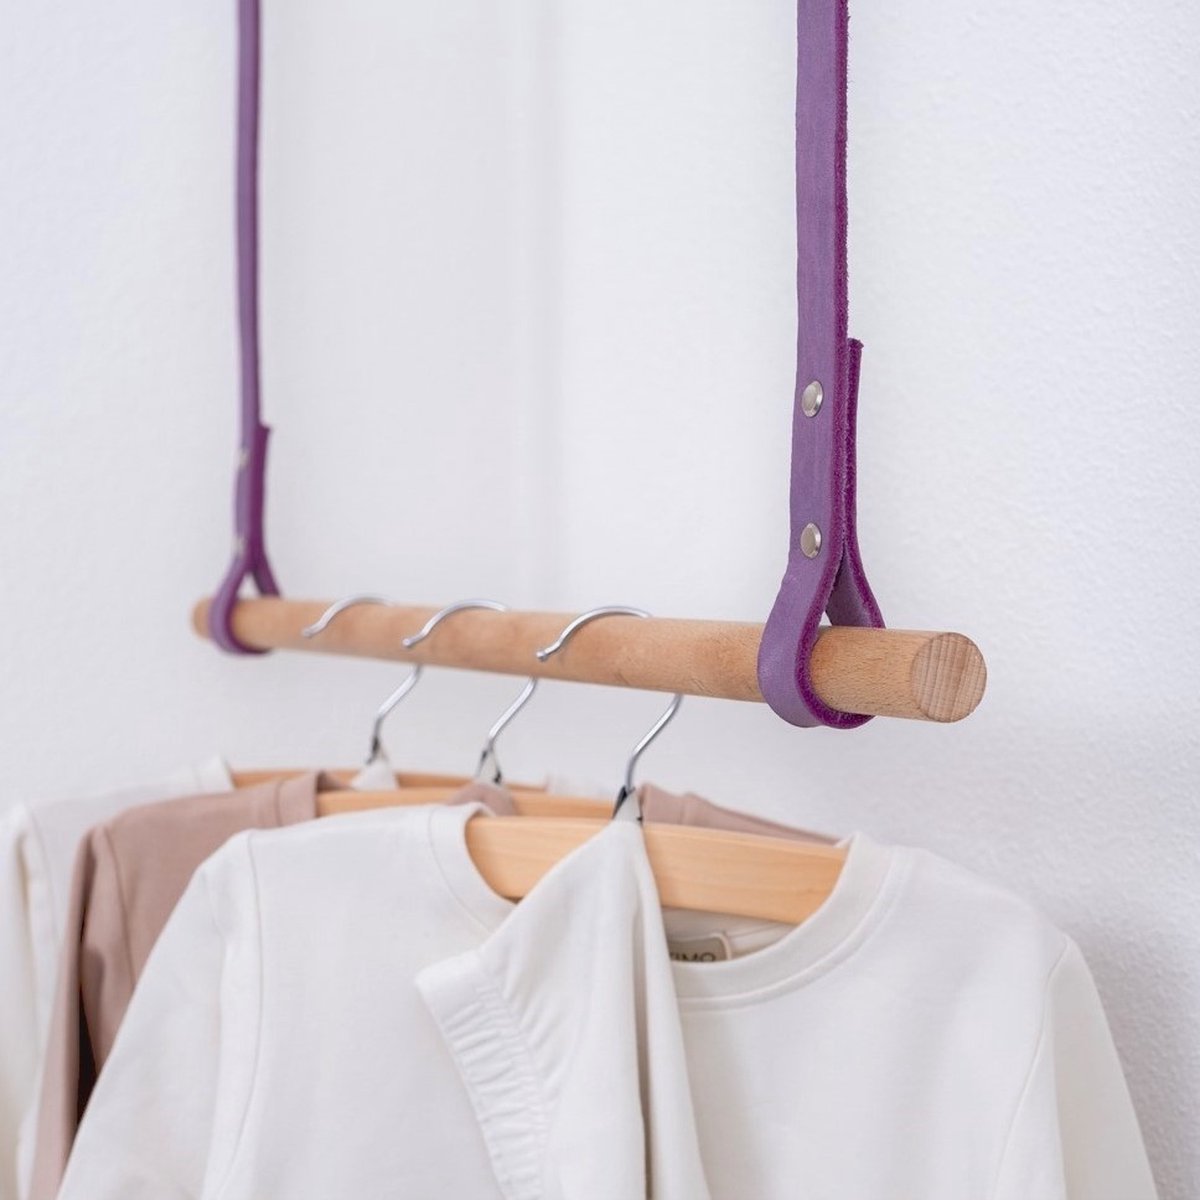 BAKIMO - Hangend kledingrek - Leer - Soft Lilac - Medium